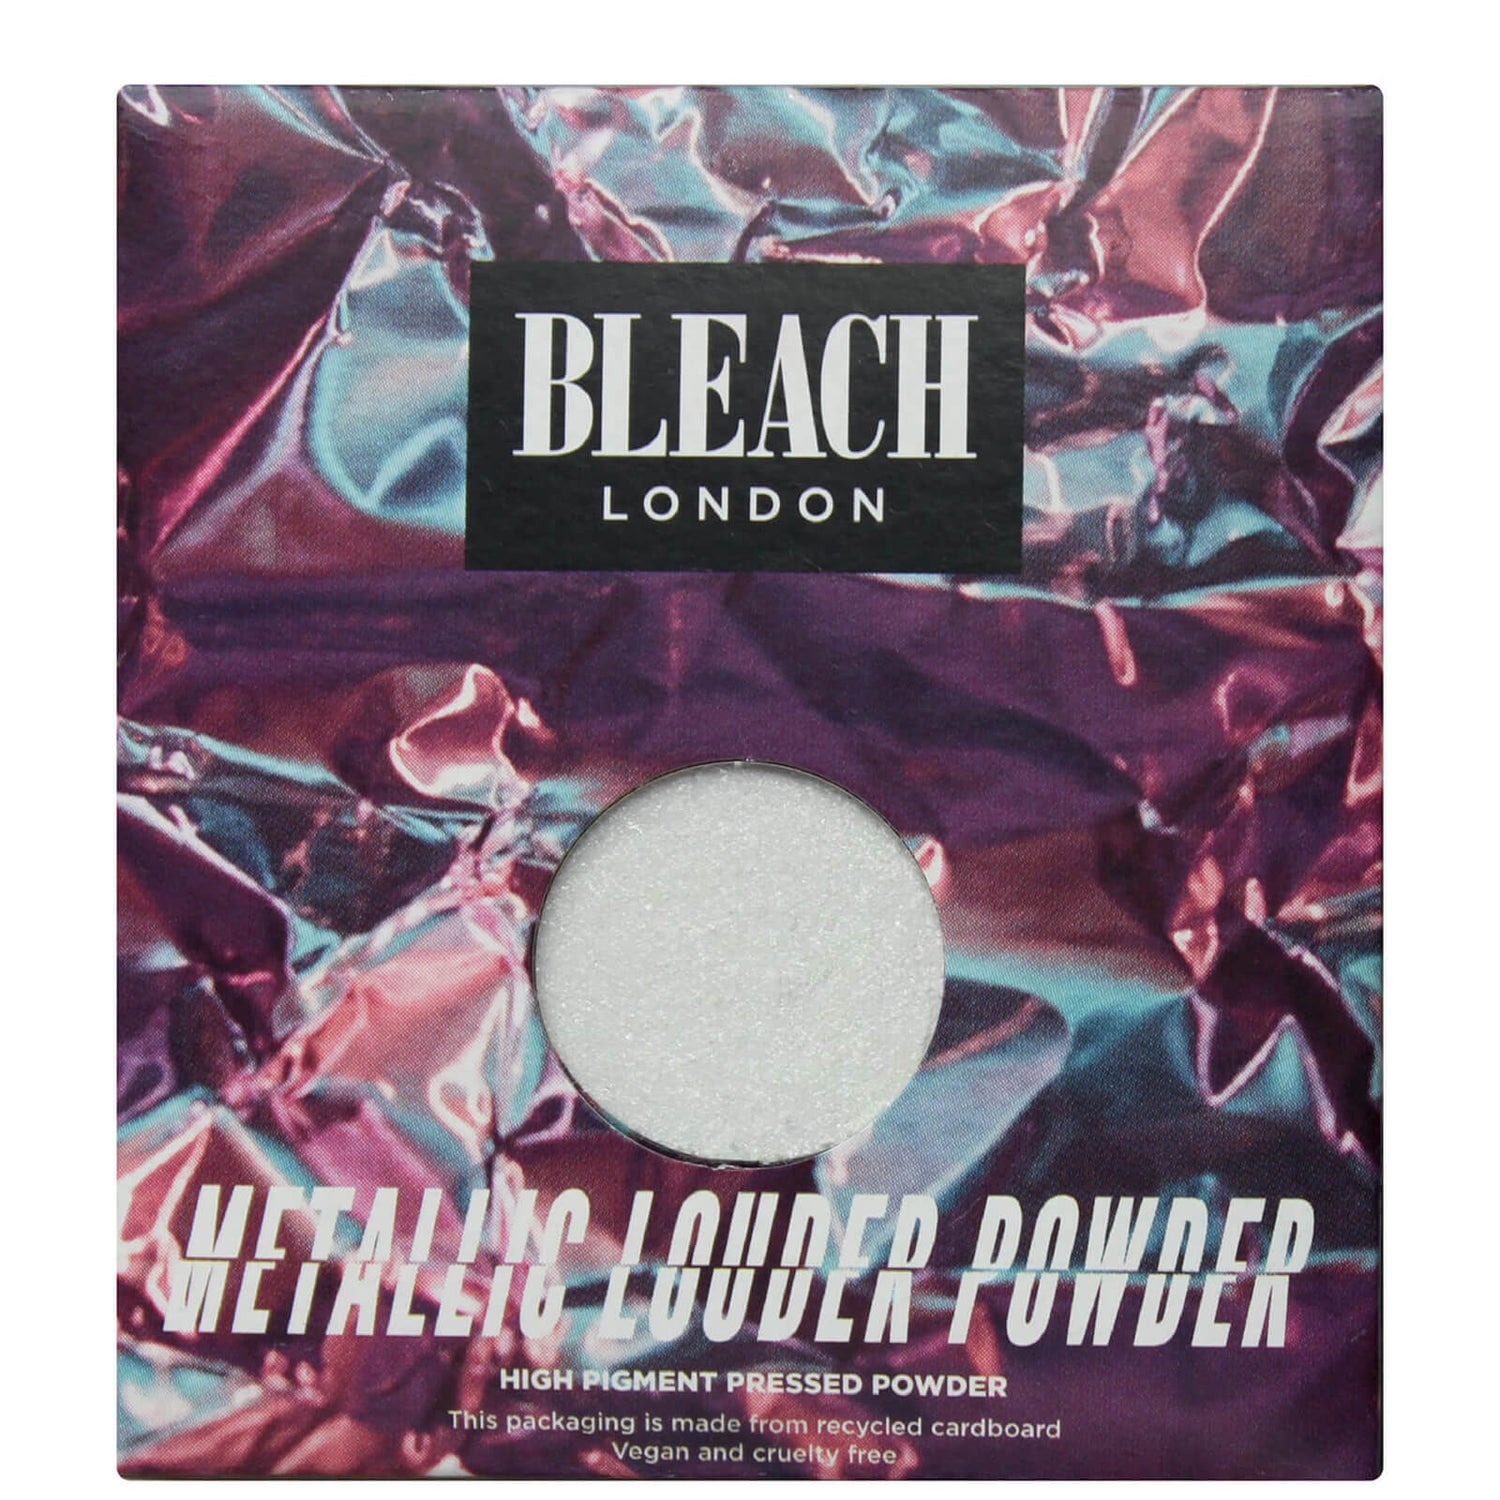 BLEACH LONDON Metallic Louder Powder P1 Me